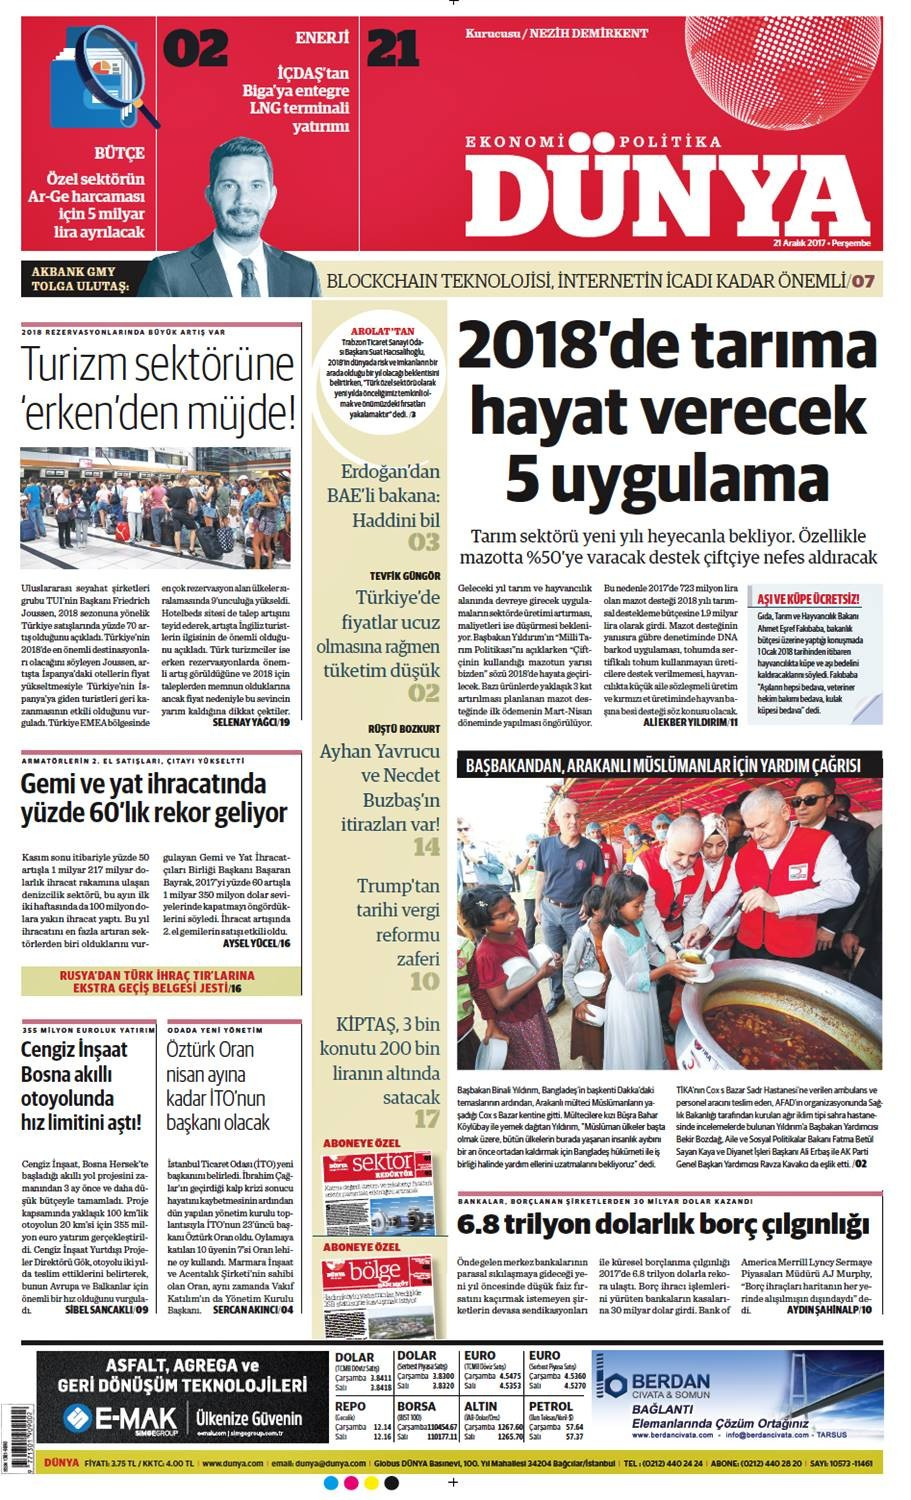 Günün gazete manşetleri (21 Aralık 2017) - Sayfa 1